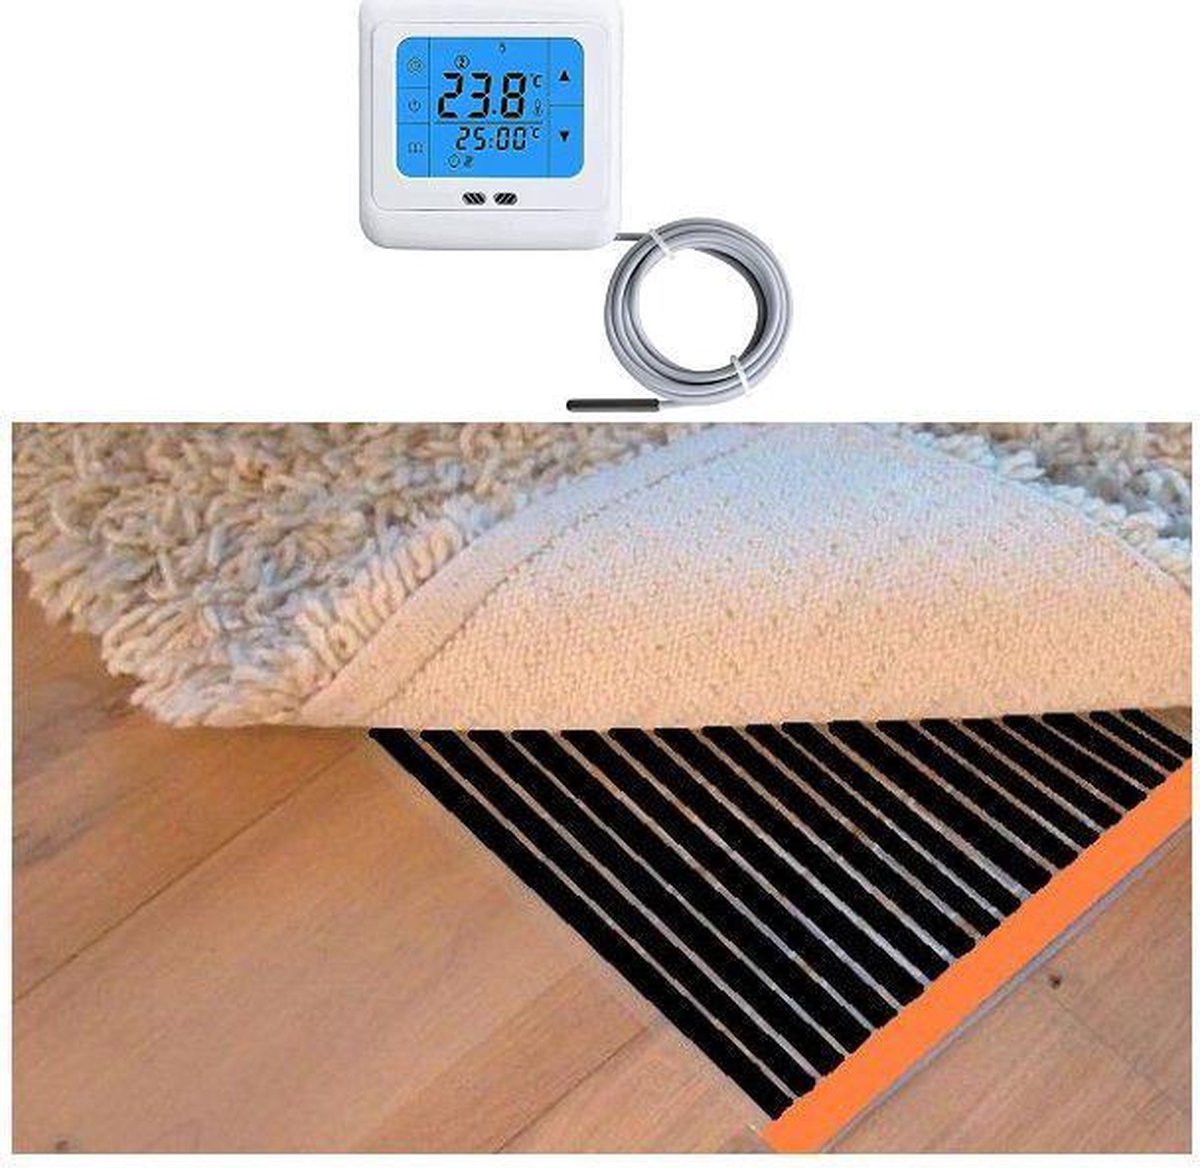 Woonkamer verwarmingsfolie infrarood folie voor vloerbedekking, tapijten vloerkleden elektrisch met TH 89 thermostaat 175 cm x 900 cm 2520 Watt